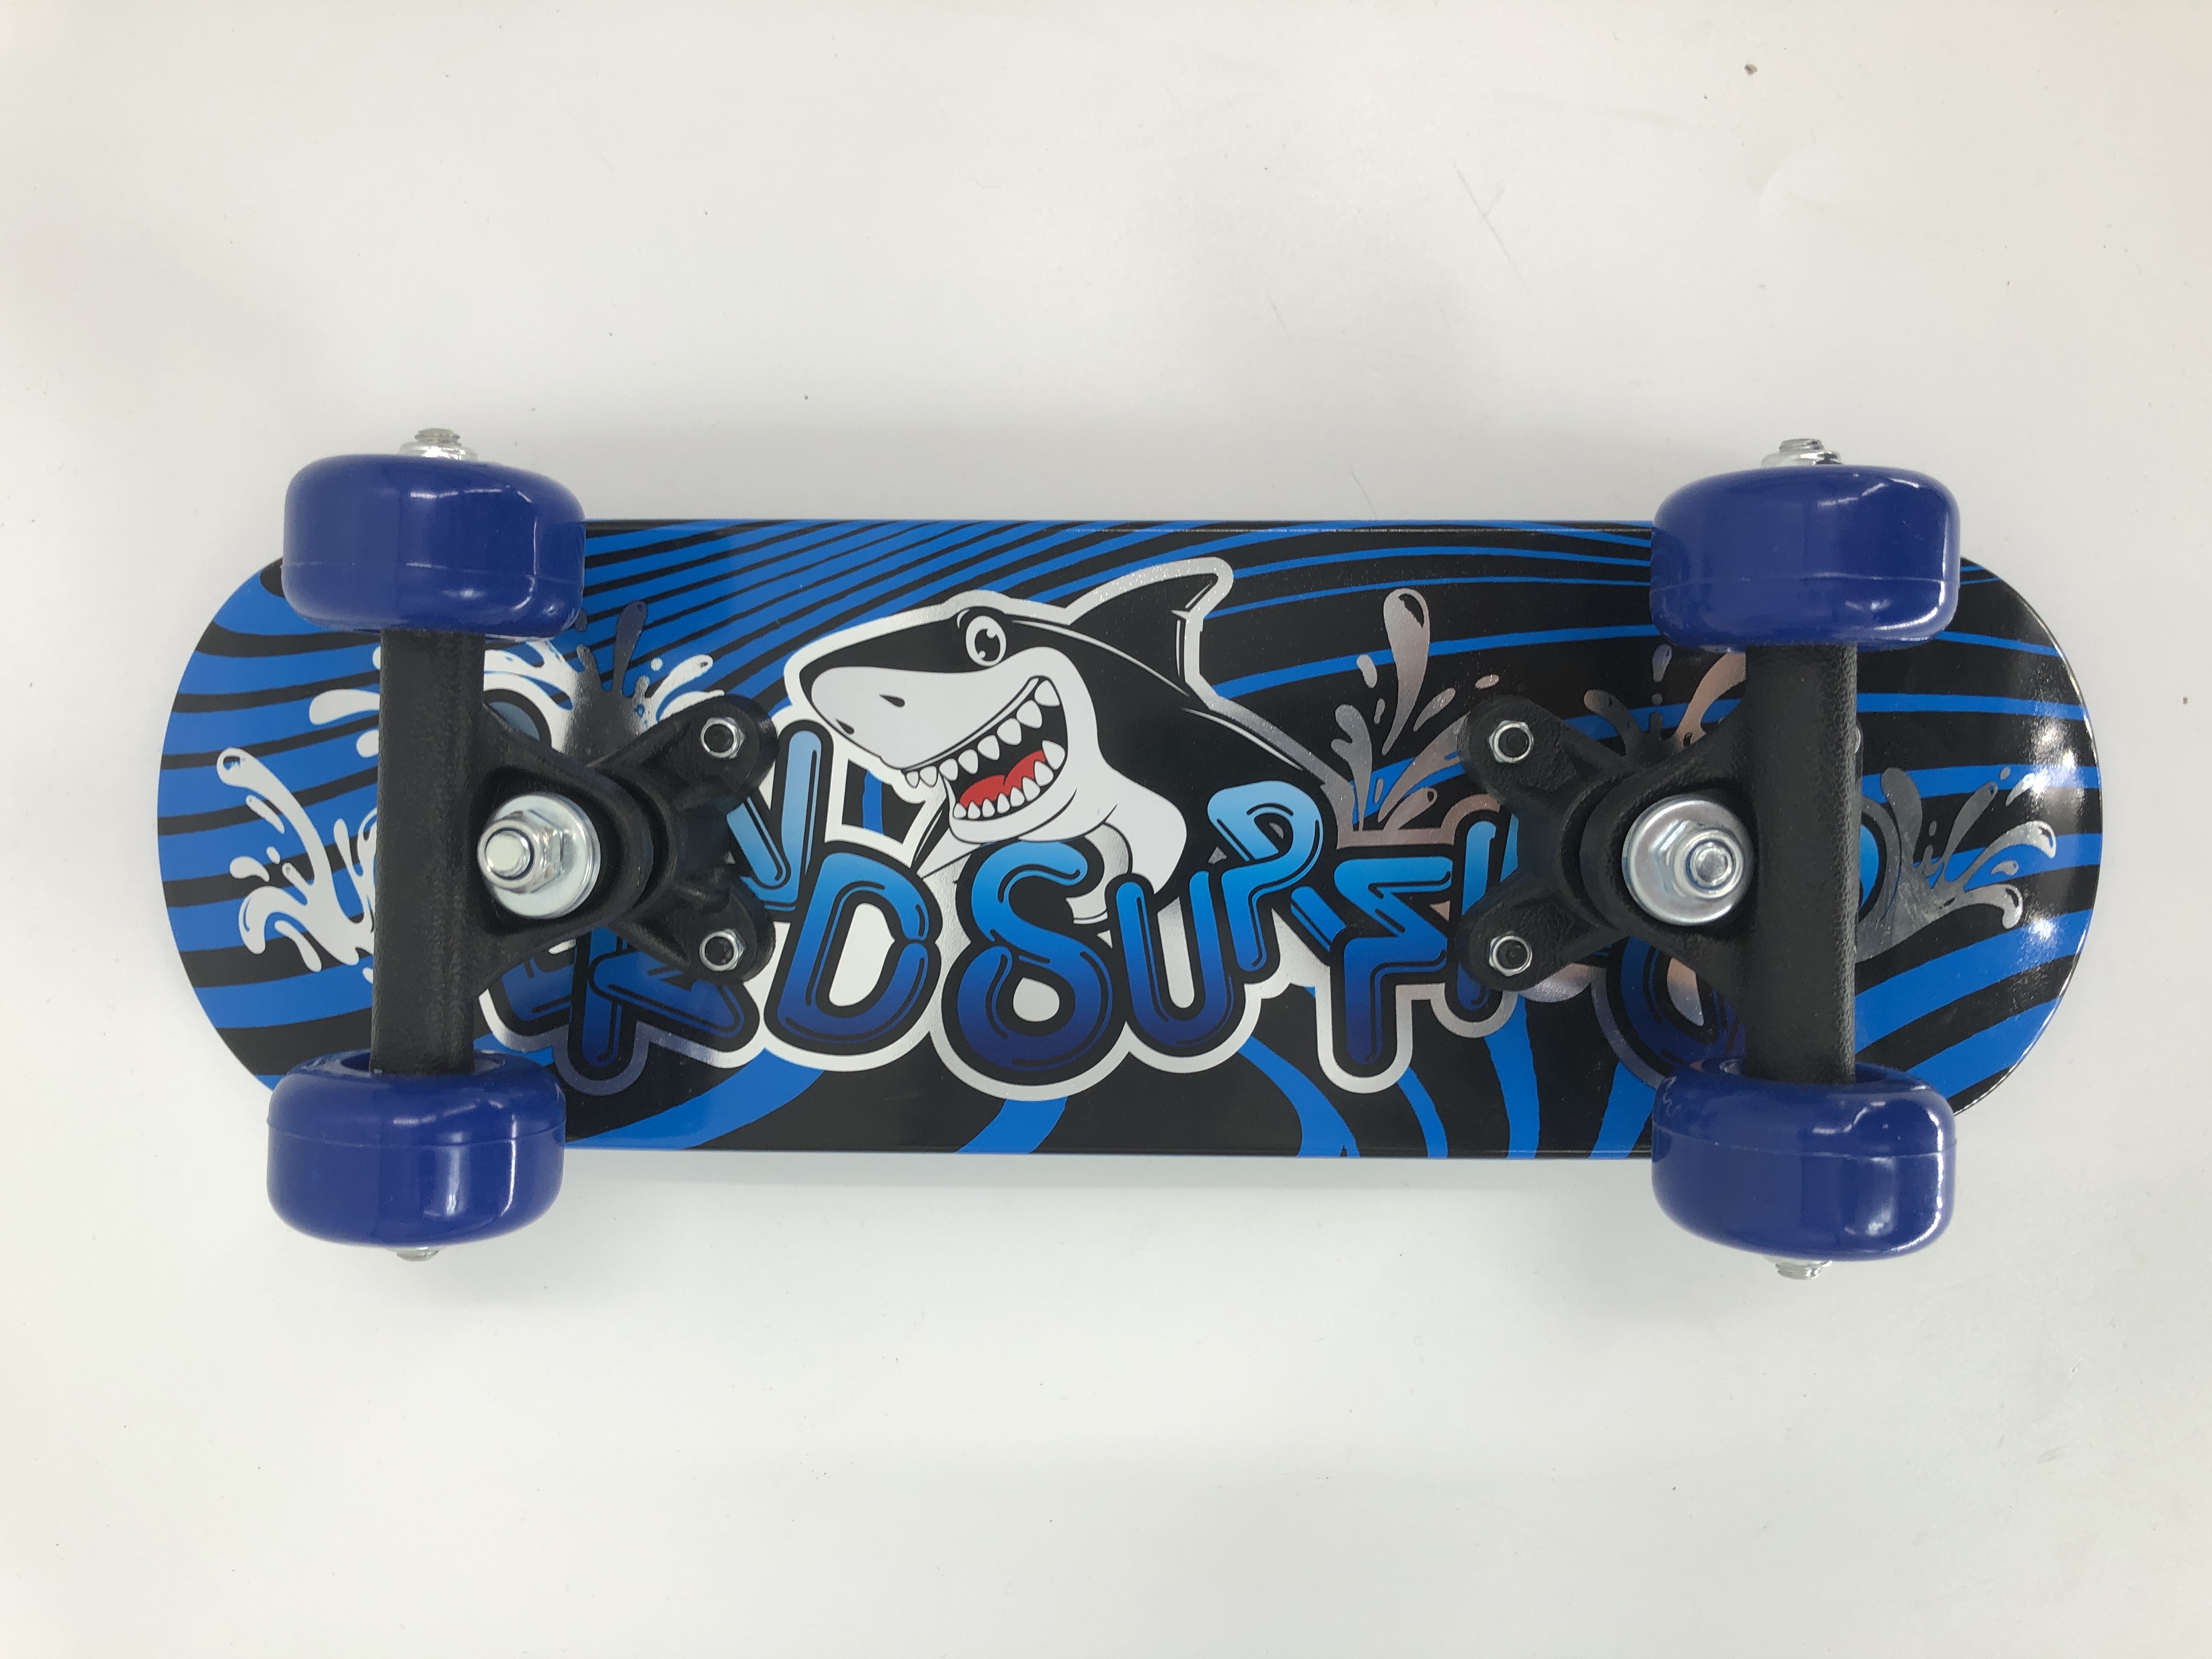 17" Molded Pattern Skateboard (GS-SB-XD01)